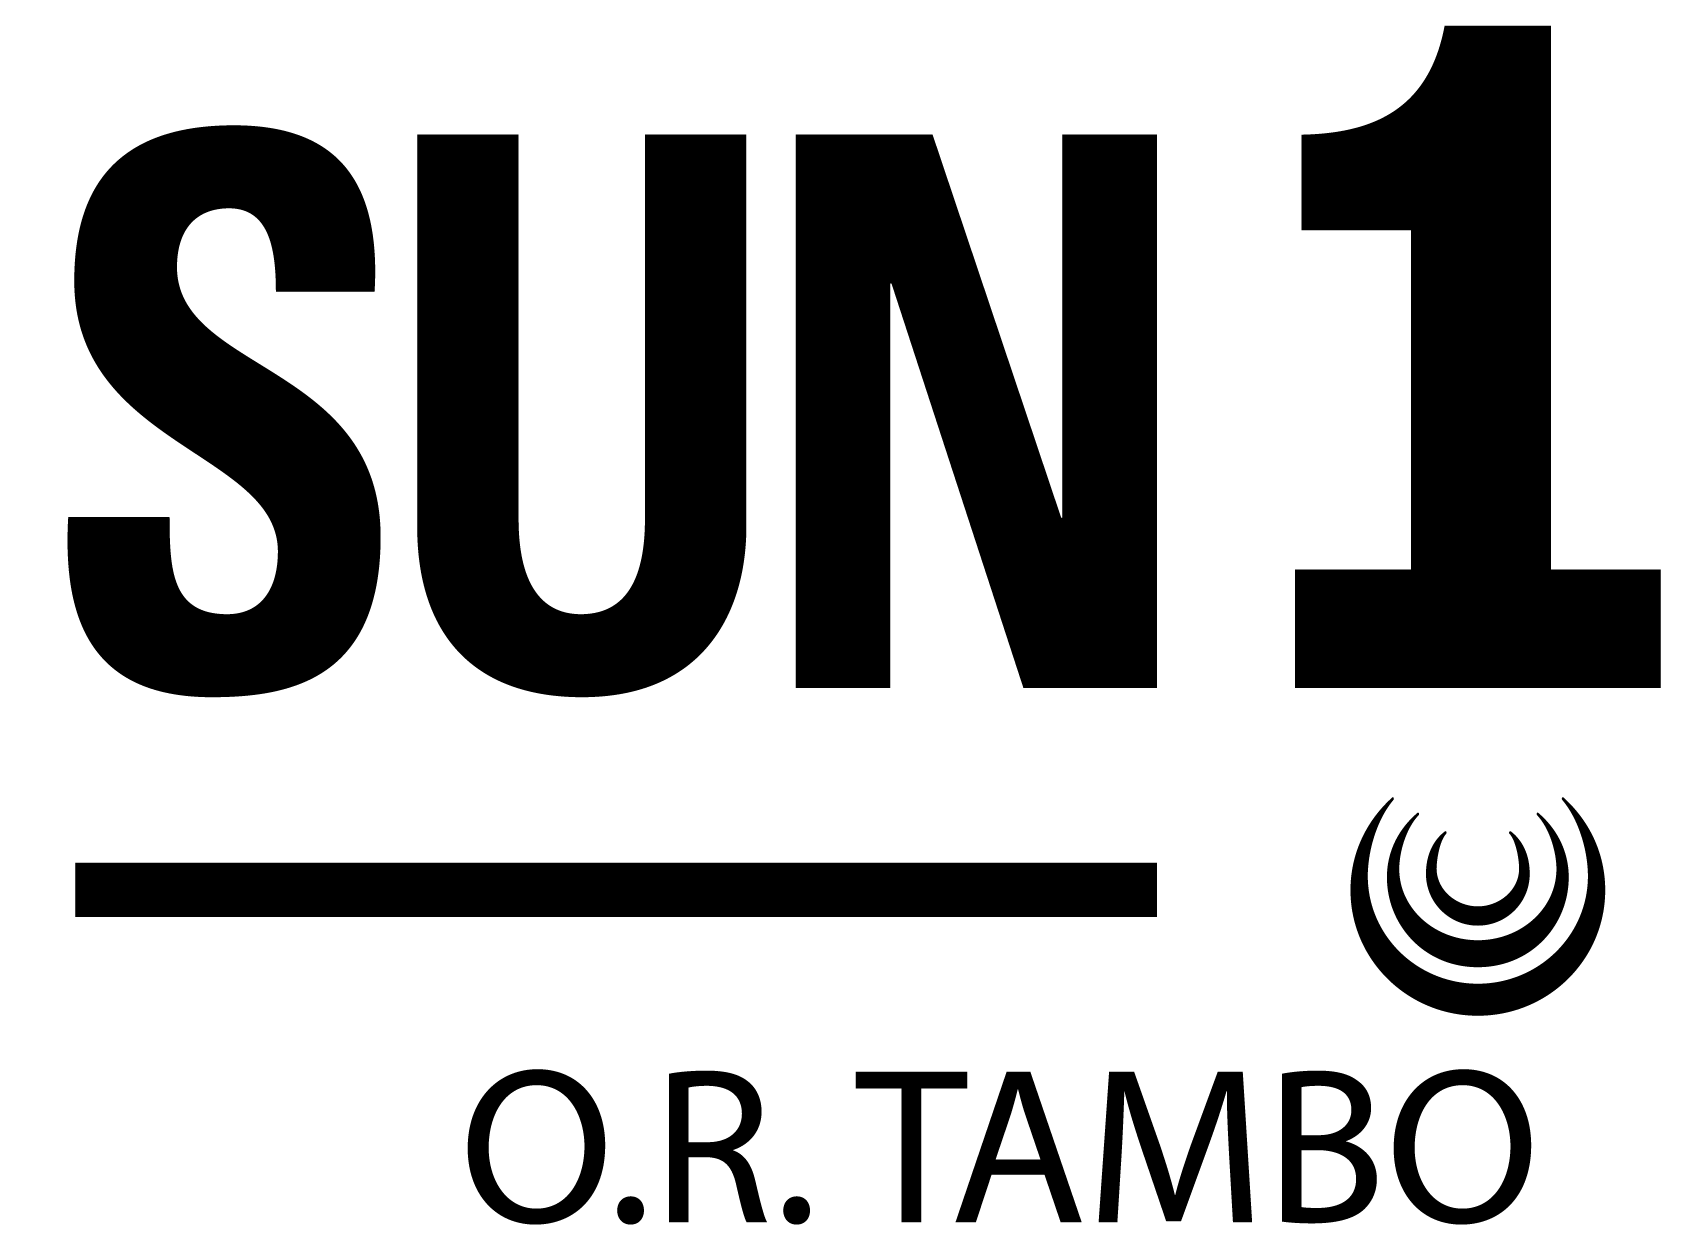 SUN1 O.R. Tambo Logo